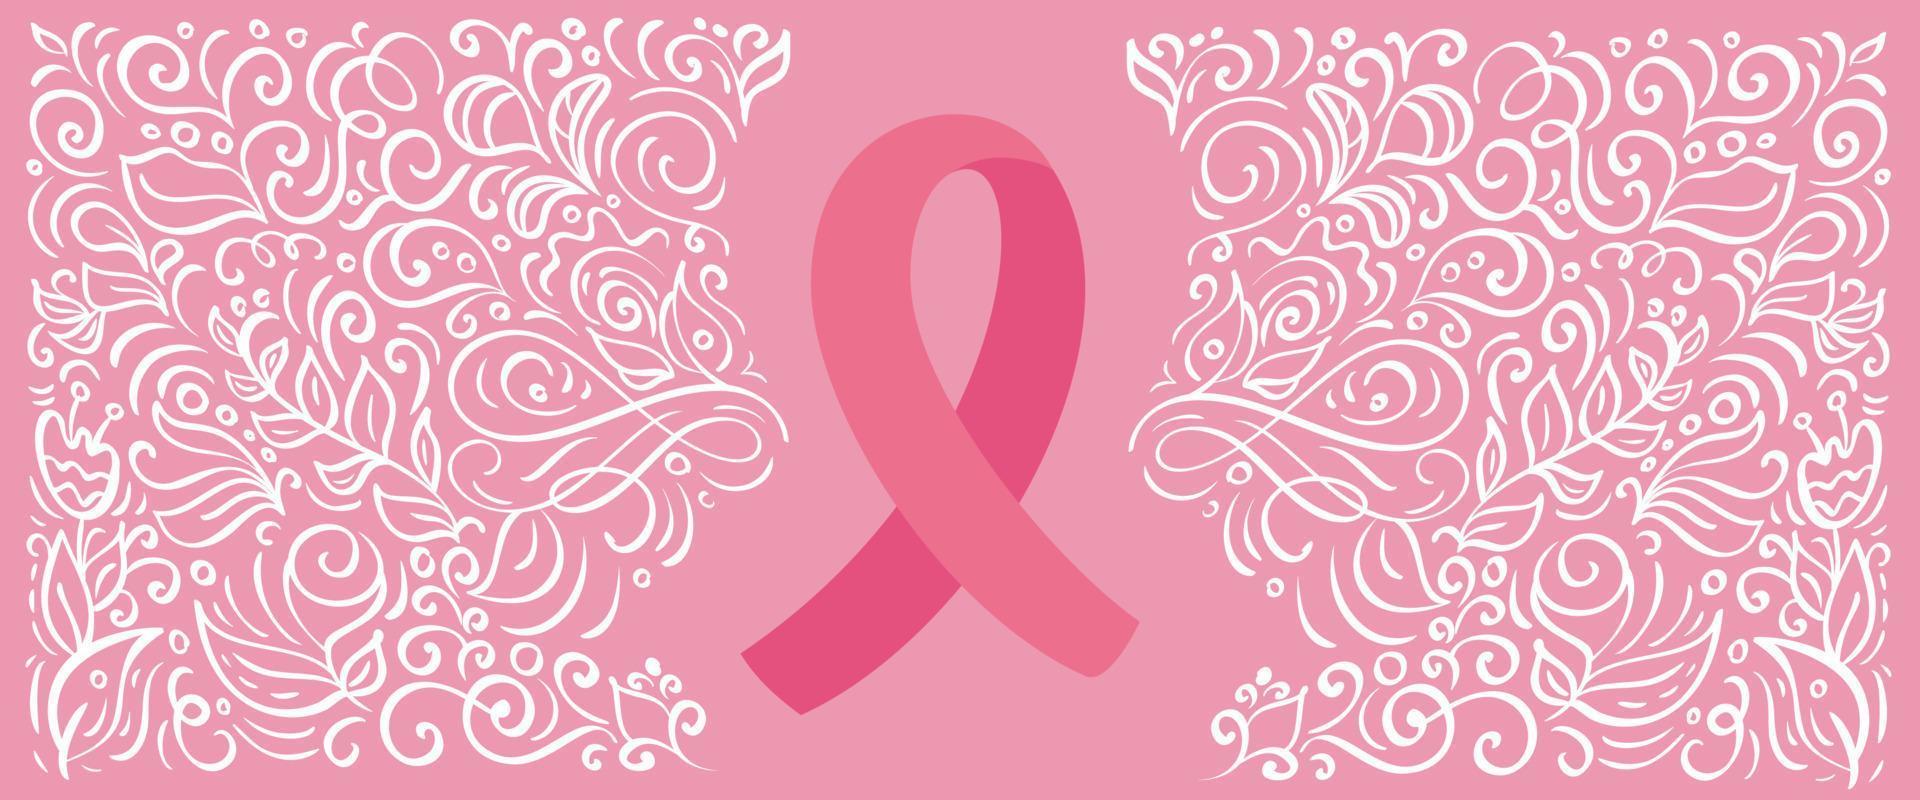 stilisierte rosa Vektor Banner Band von Brustkrebs für Oktober ist Krebs Bewusstsein Monat. Kalligraphieillustration auf rosa blühendem Hintergrund